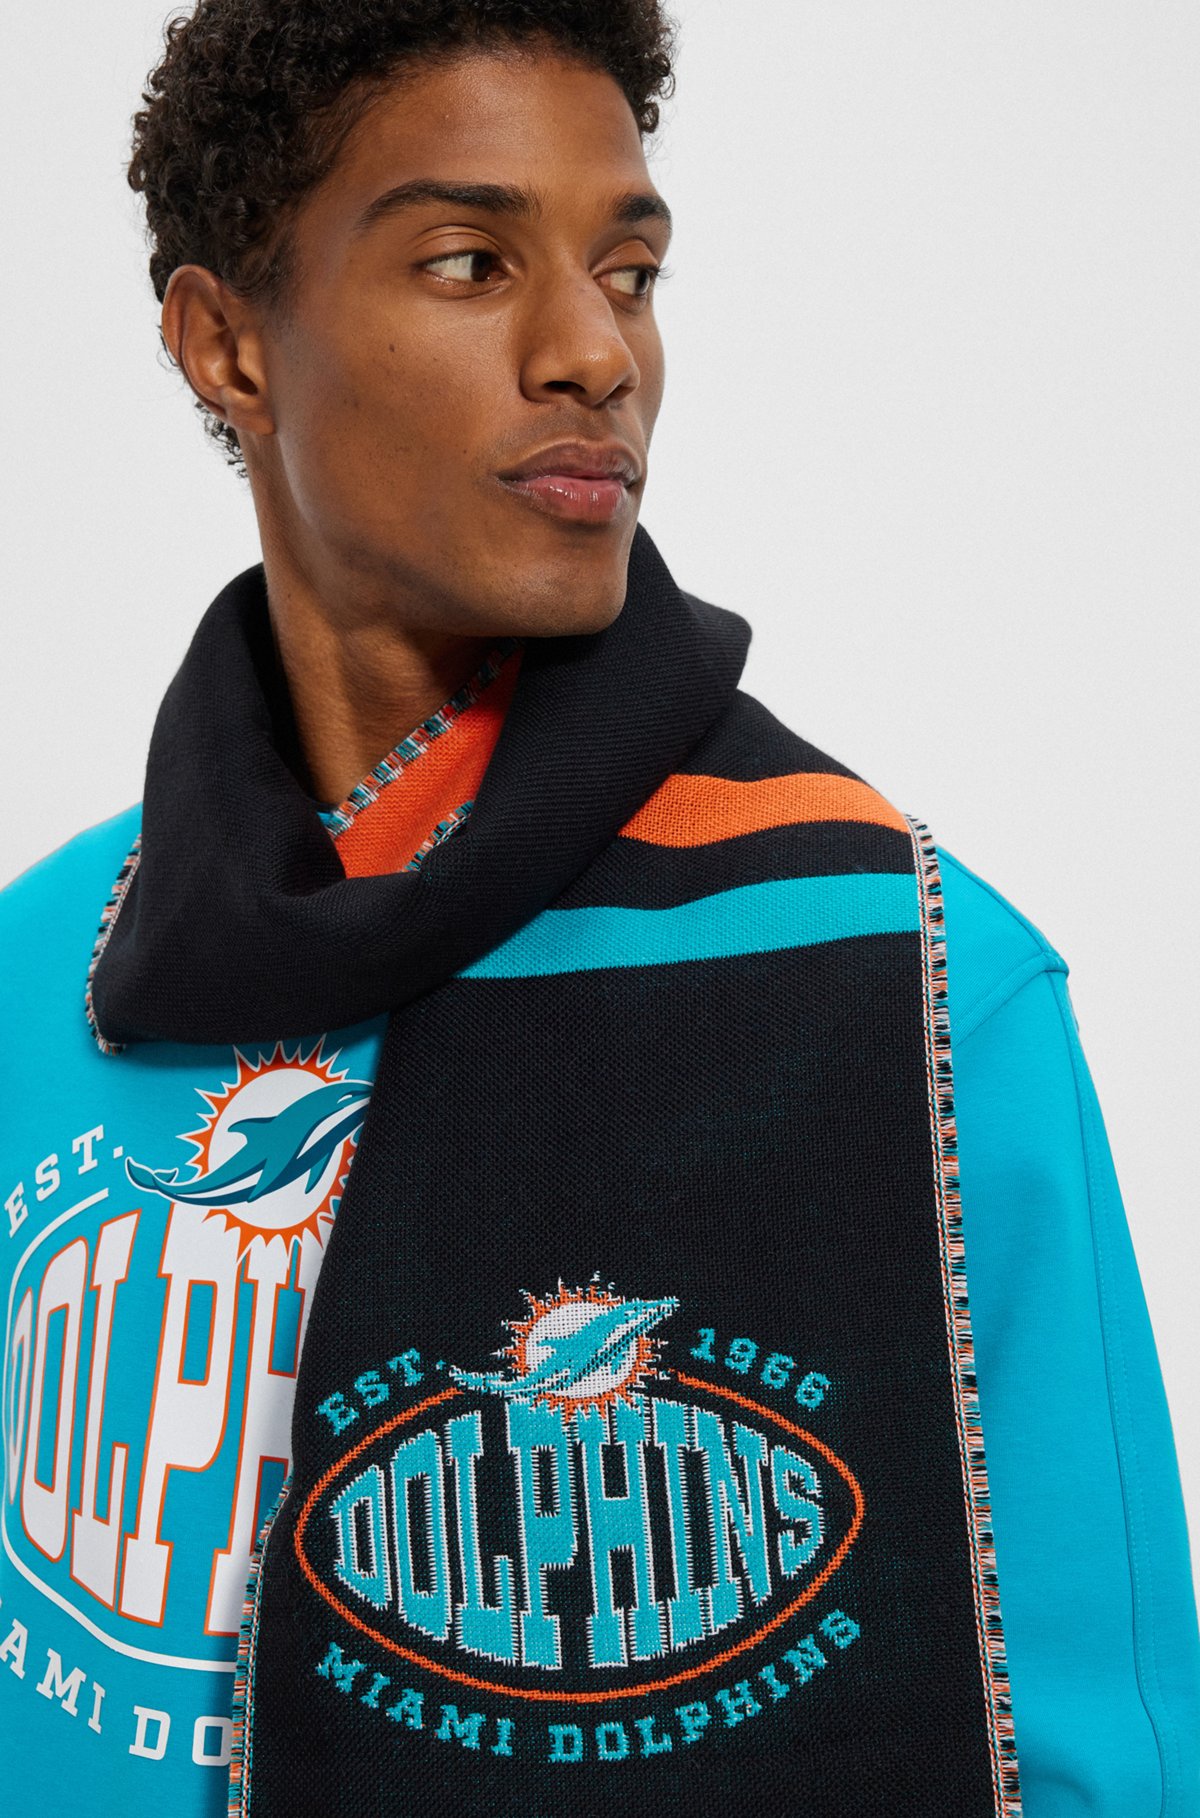 BOSS x NFL Schal mit Logo und Branding der Miami Dolphins, Dolphins